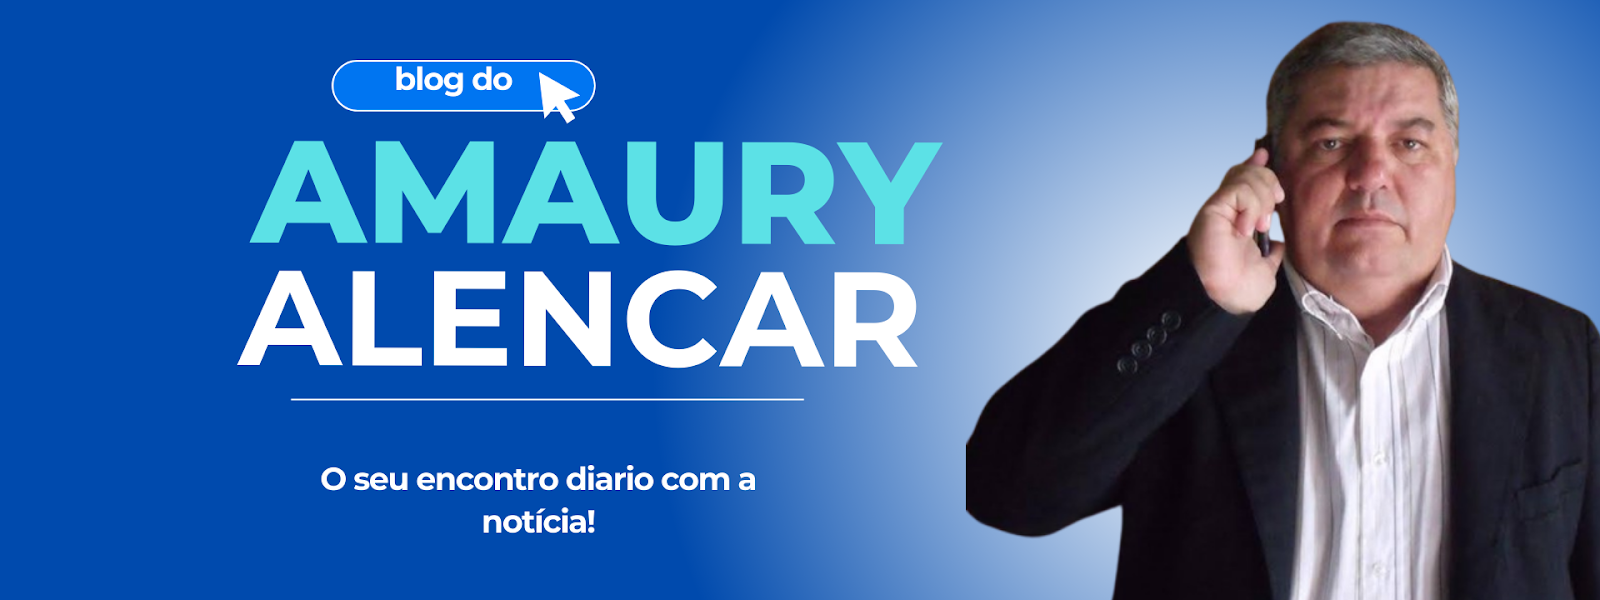 Blog Amaury Alencar - O Mais completo do Interior do Ceará